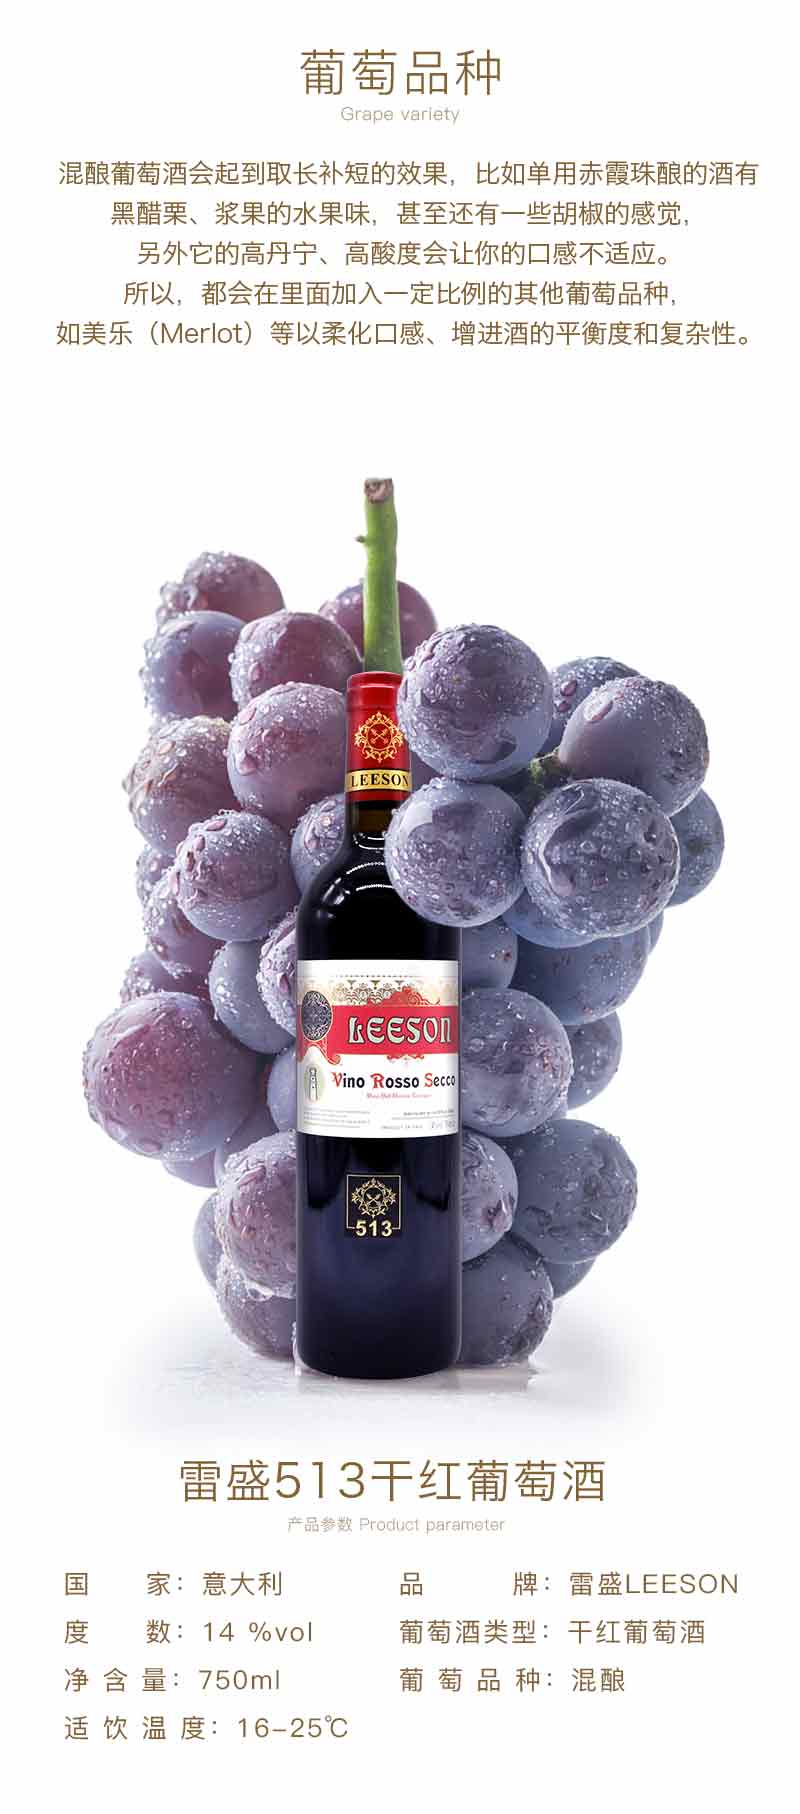 雷盛红酒 513意大利干红葡萄酒(图3)